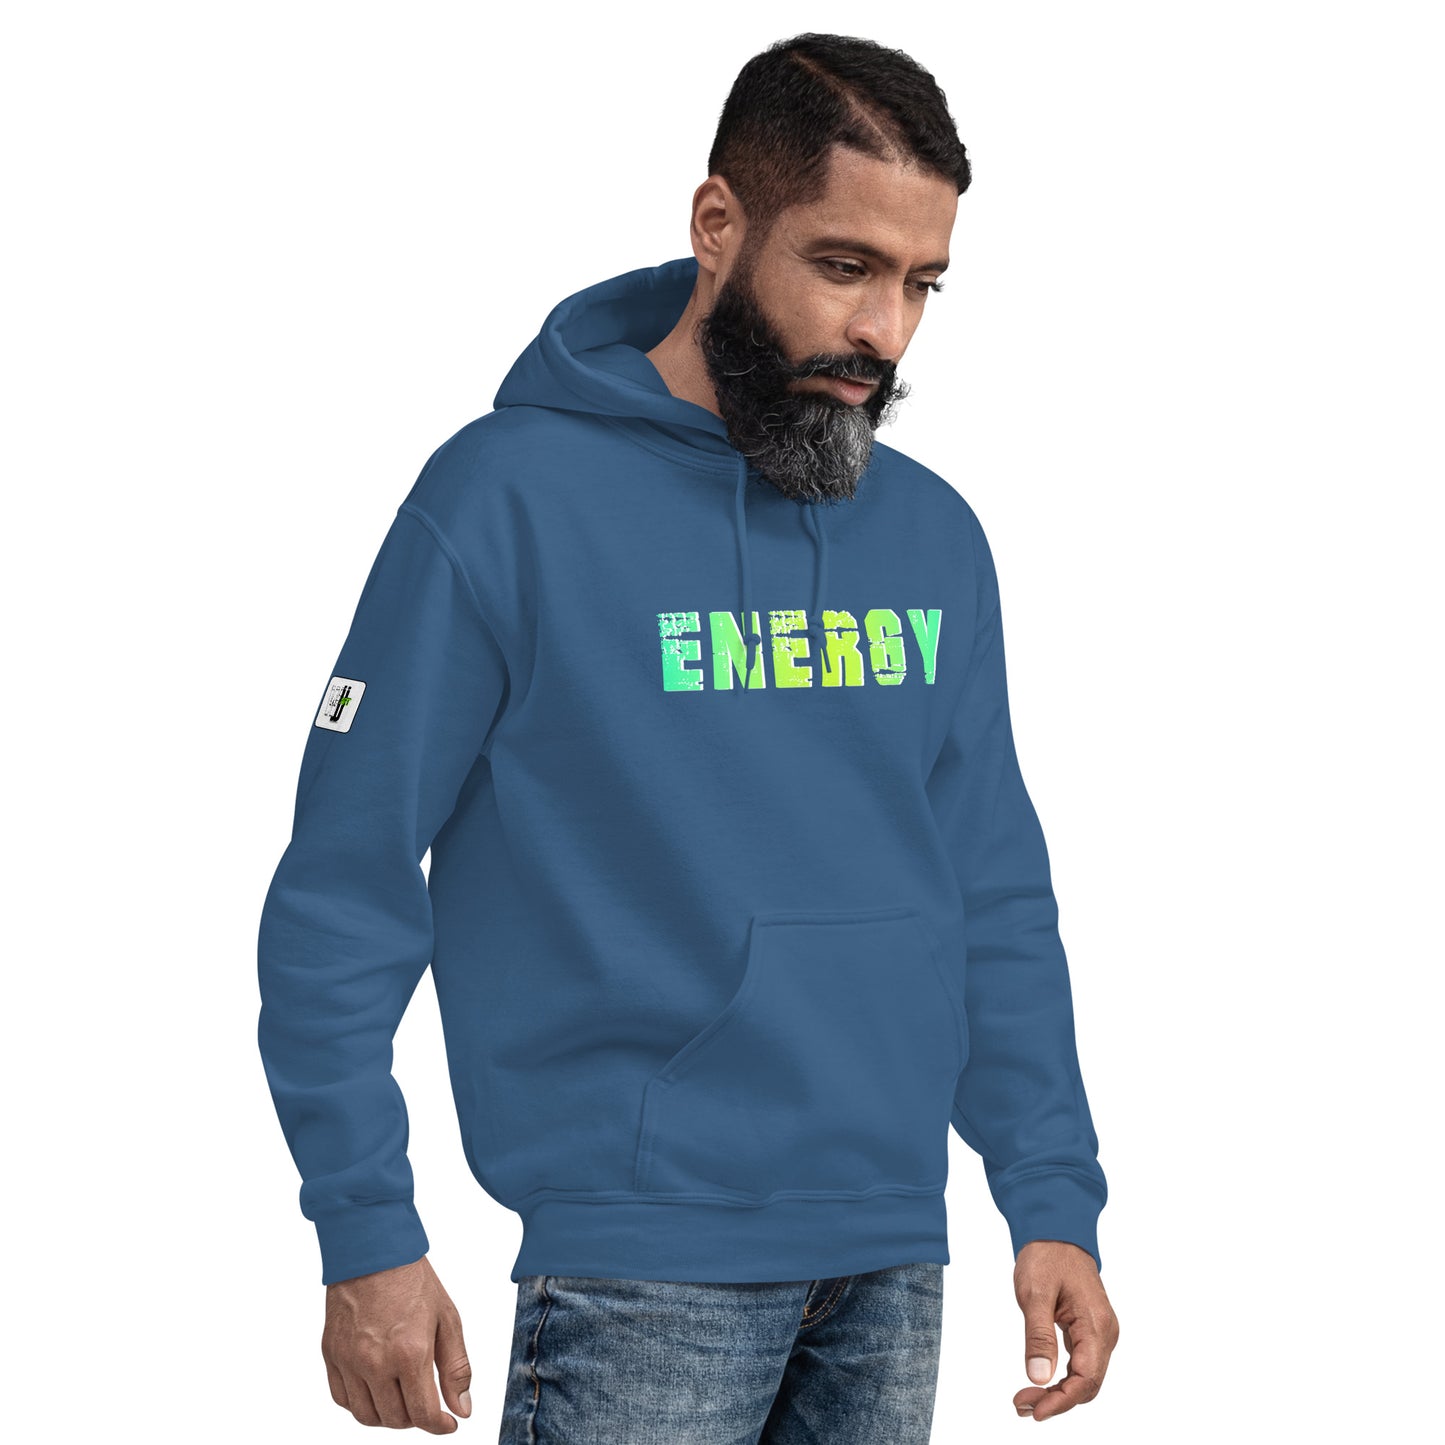 Energy- Hoodie